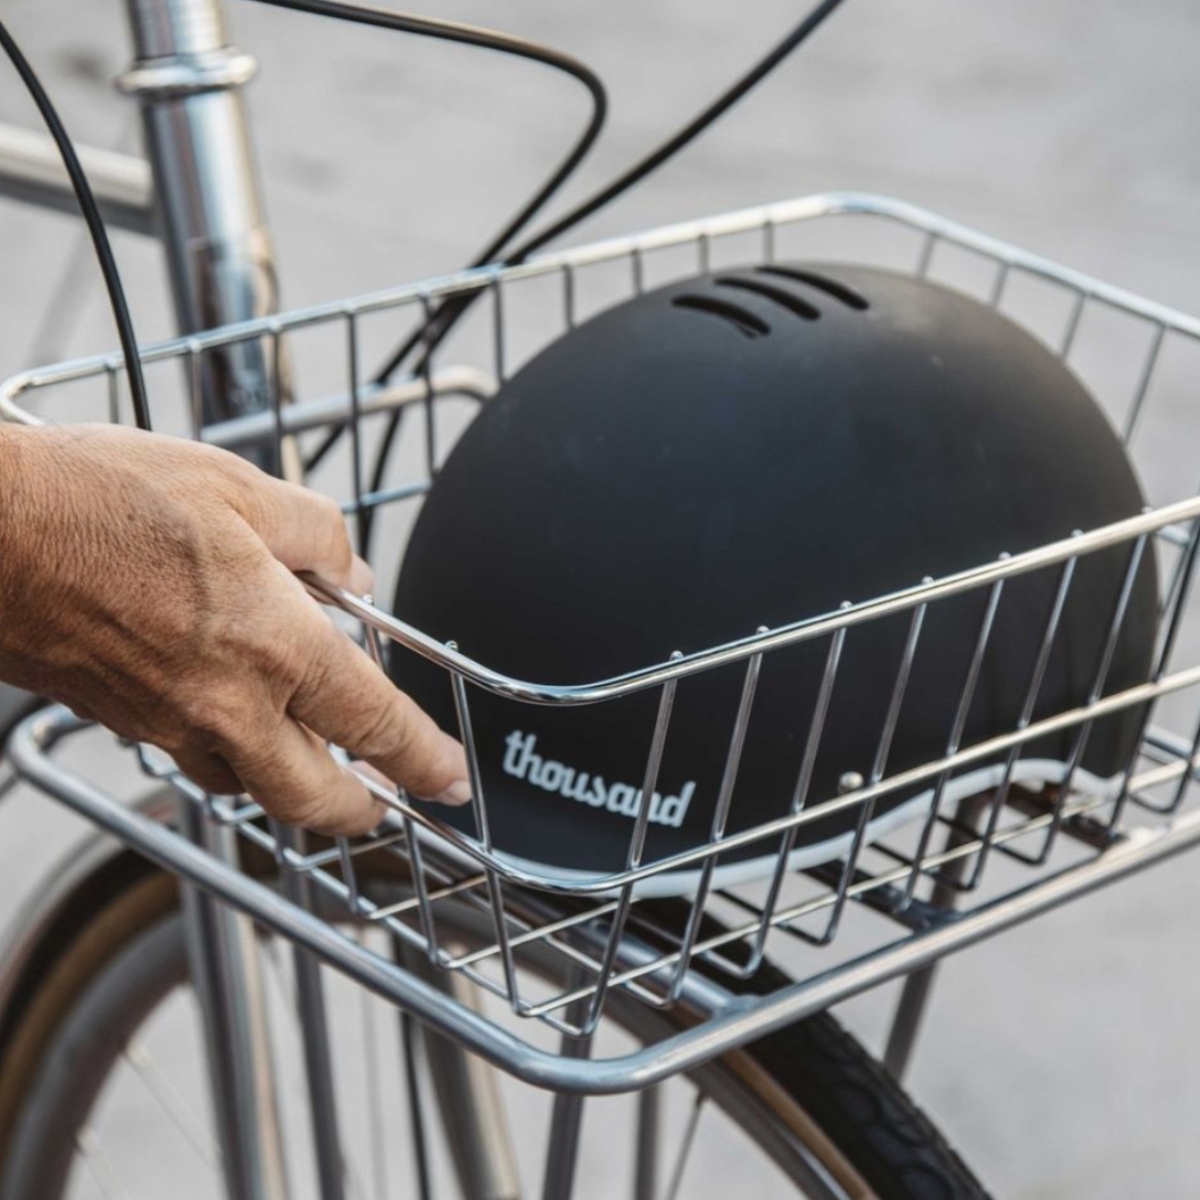 Public bikes rear metal bike basket with a helmet inside